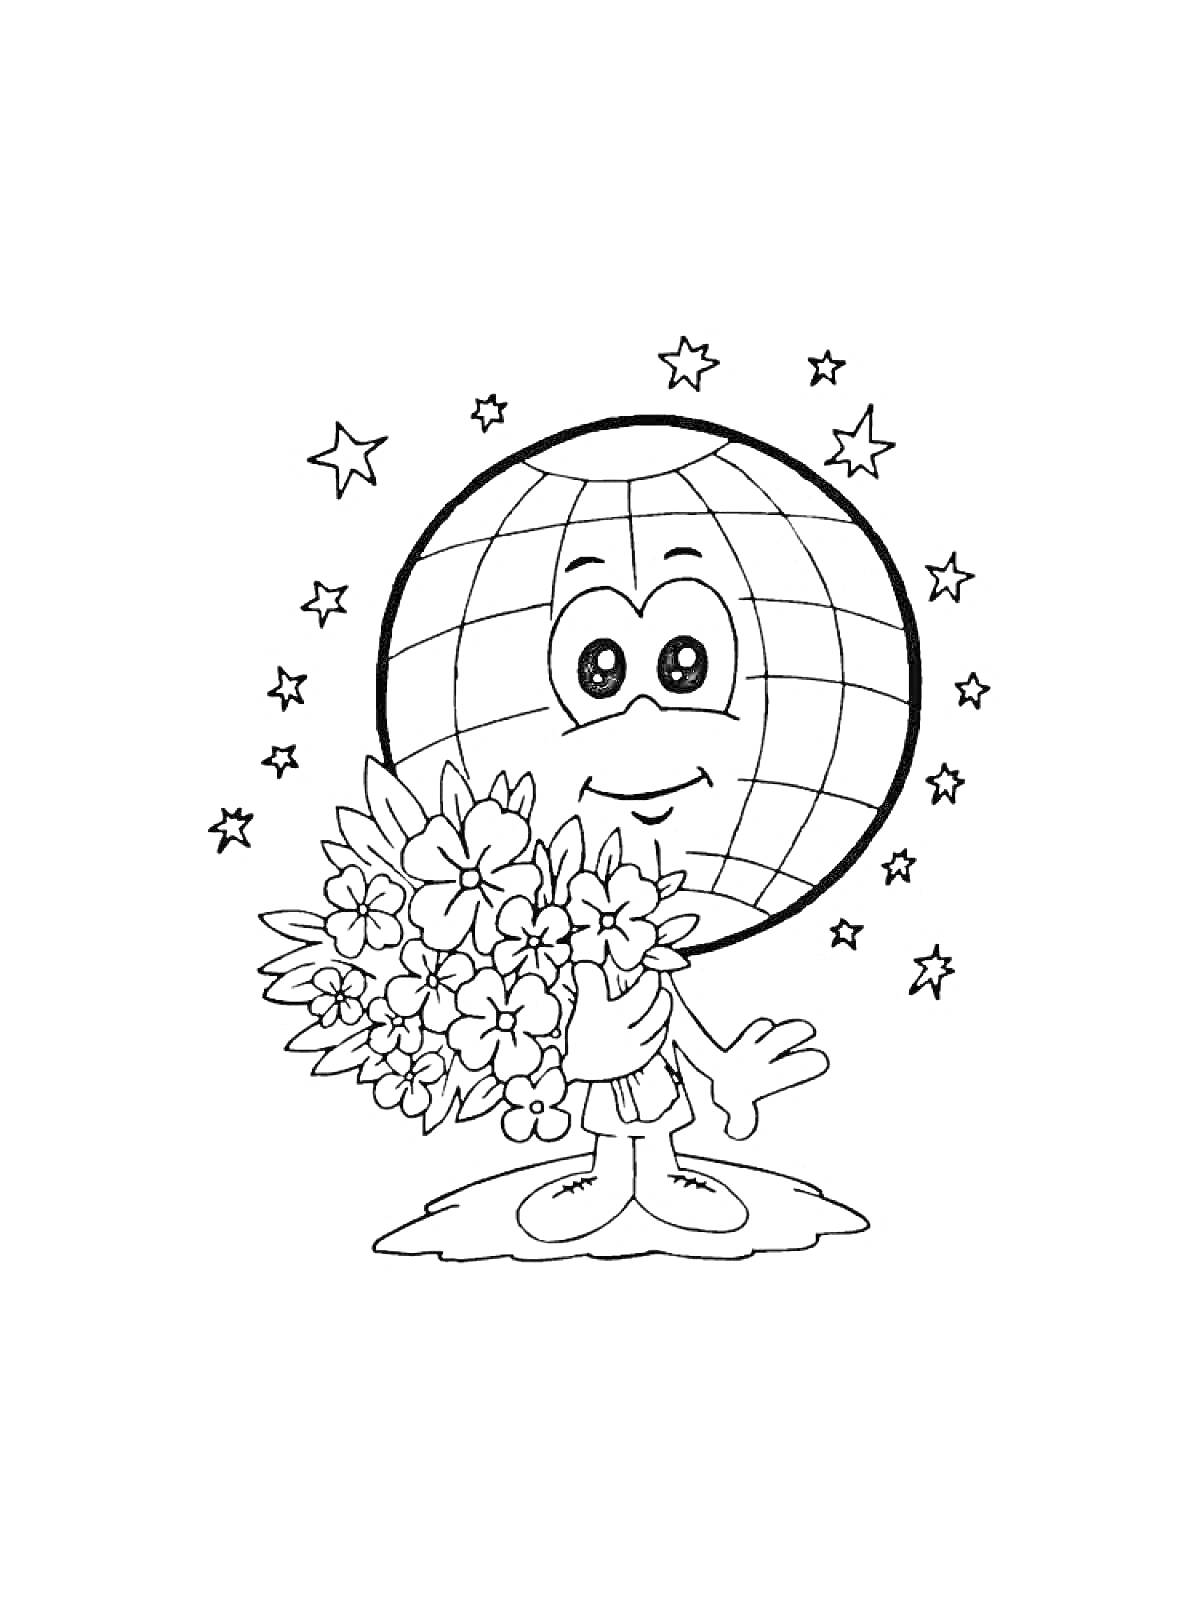 Земной шар с лицом, держащий букет цветов, на фоне звёзд